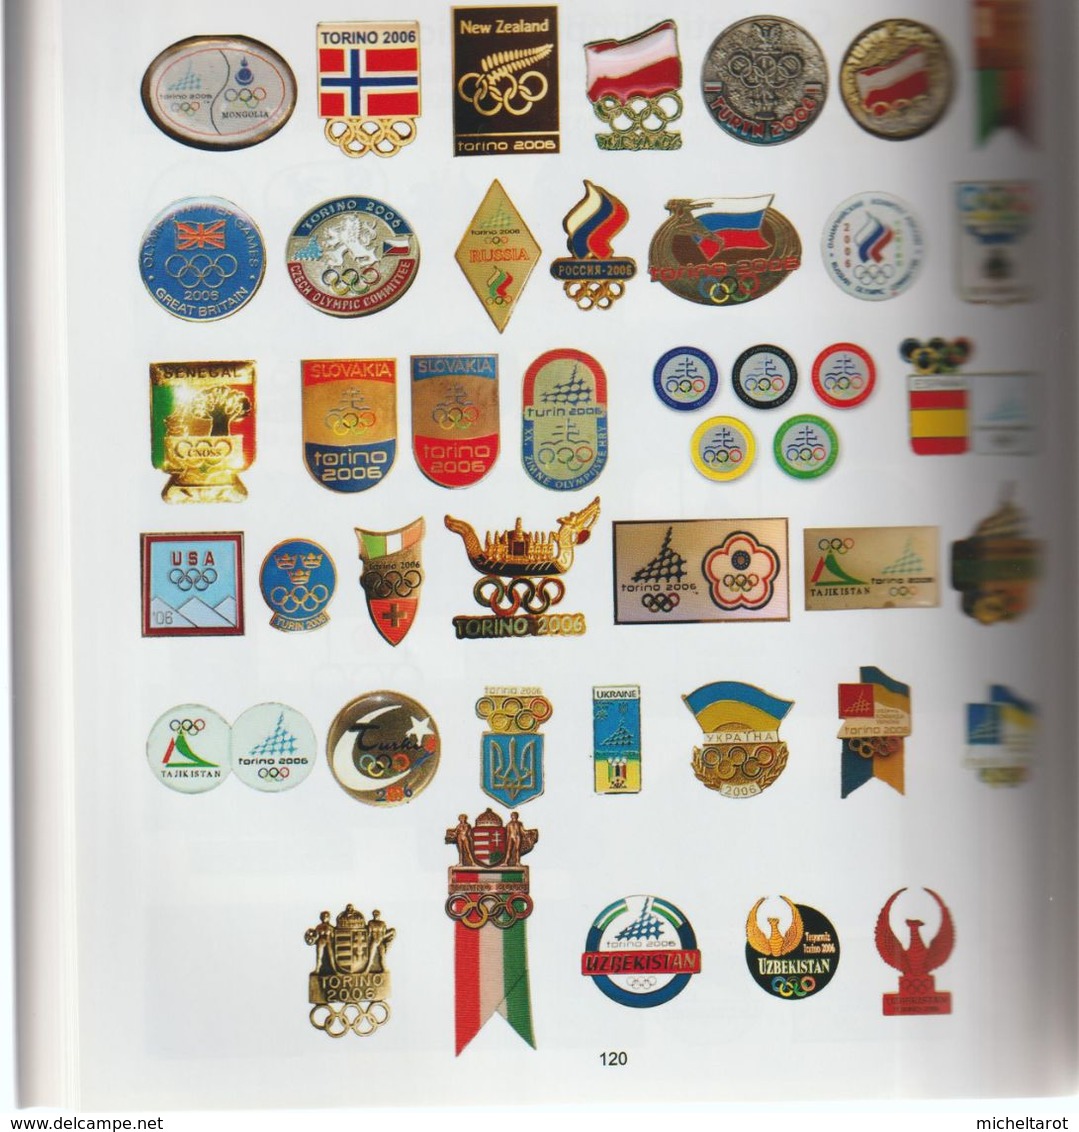 Livre : Splendide Ouvrage De 180 Pages Couleur Sur Les Collections Des Jeux Olympiques De Turin 2006 (neuf) - Lotti E Collezioni